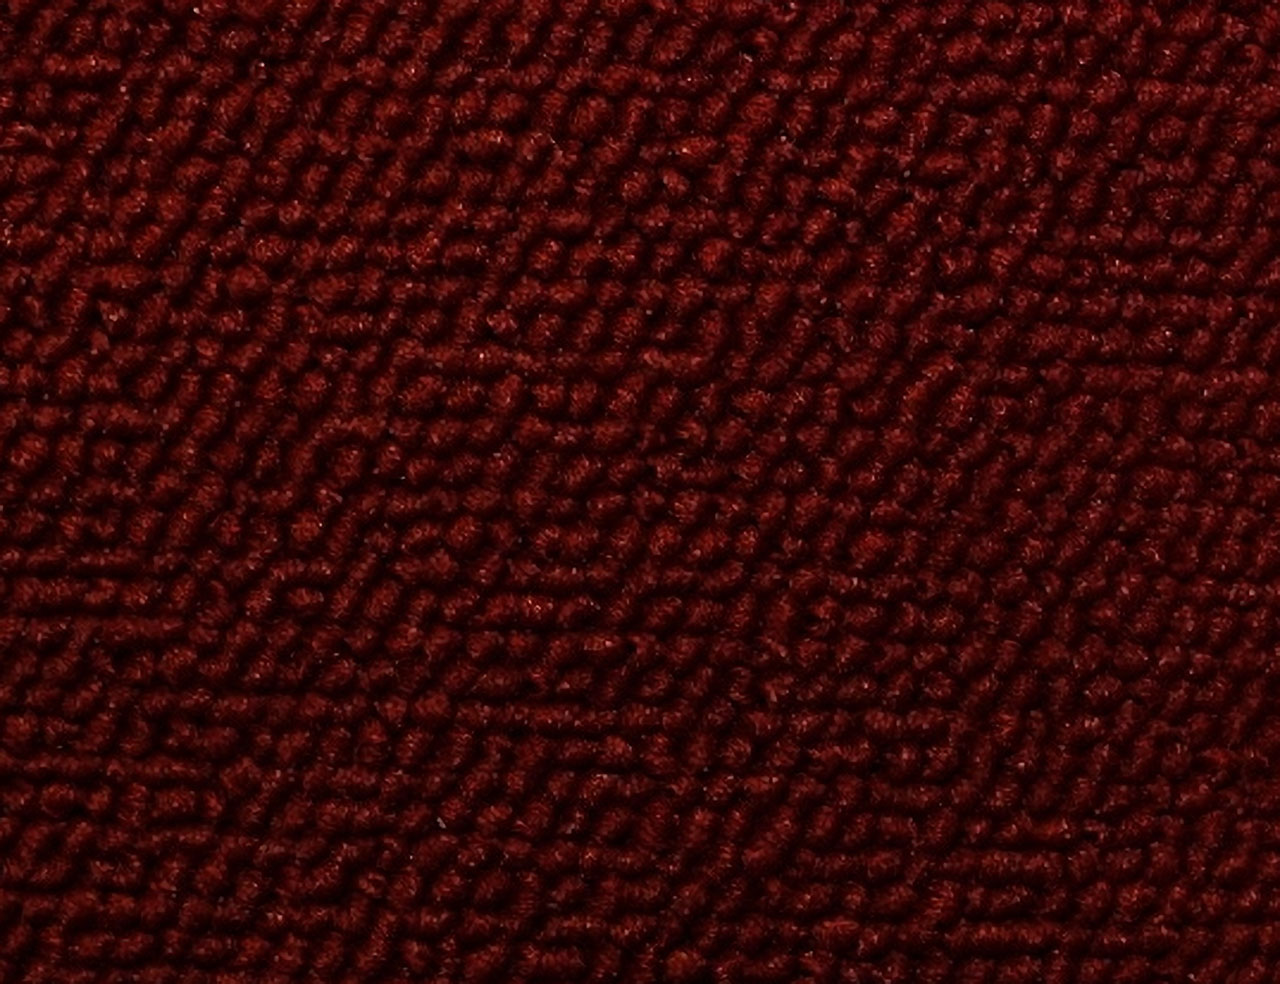 Holden Standard EH Standard Ute C55 Bolero Red Carpet (Image 1 of 1)